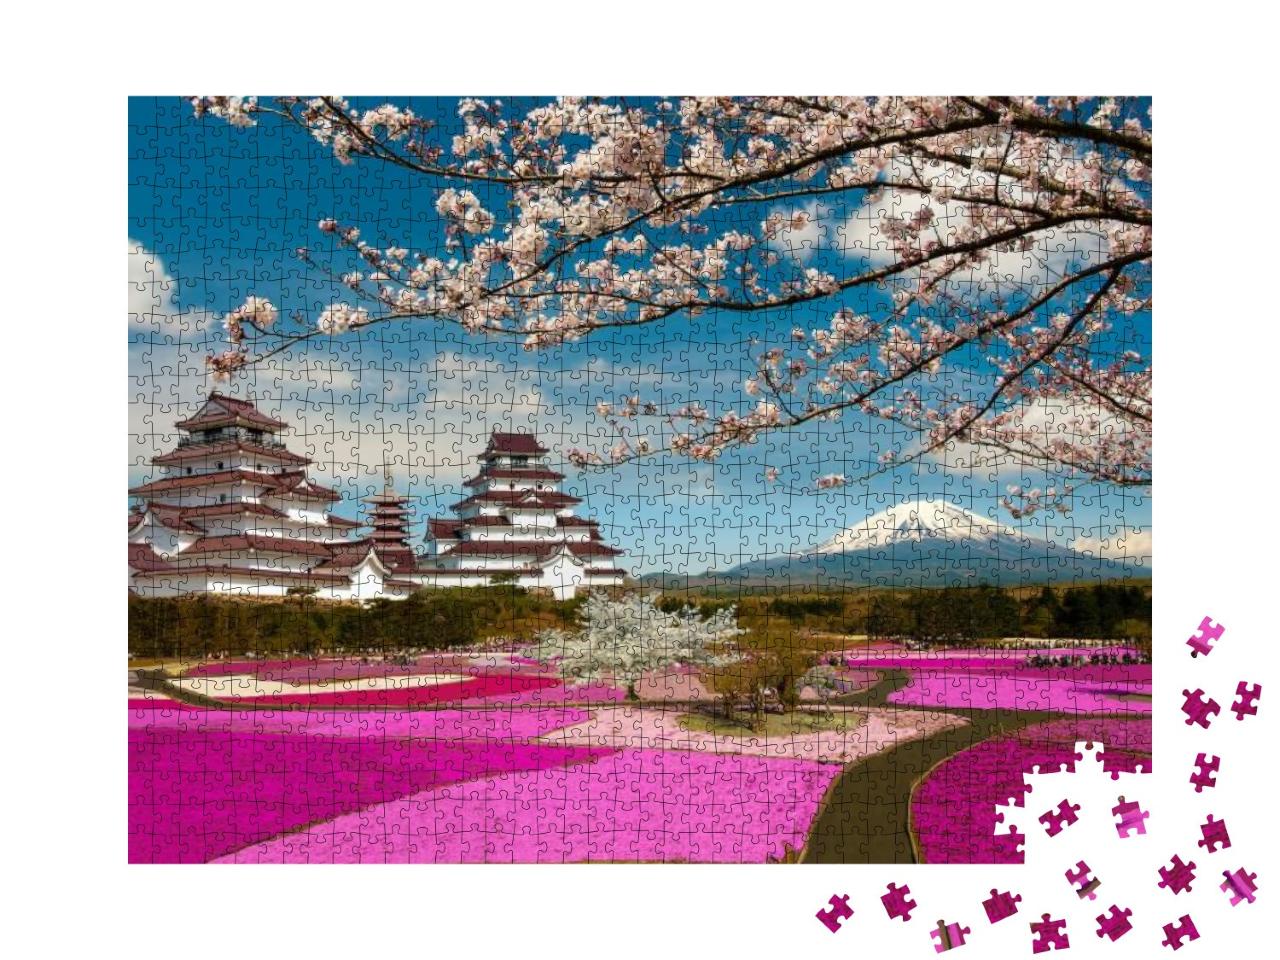 Puzzle 1000 Teile „Frühlingssaison in Japan“